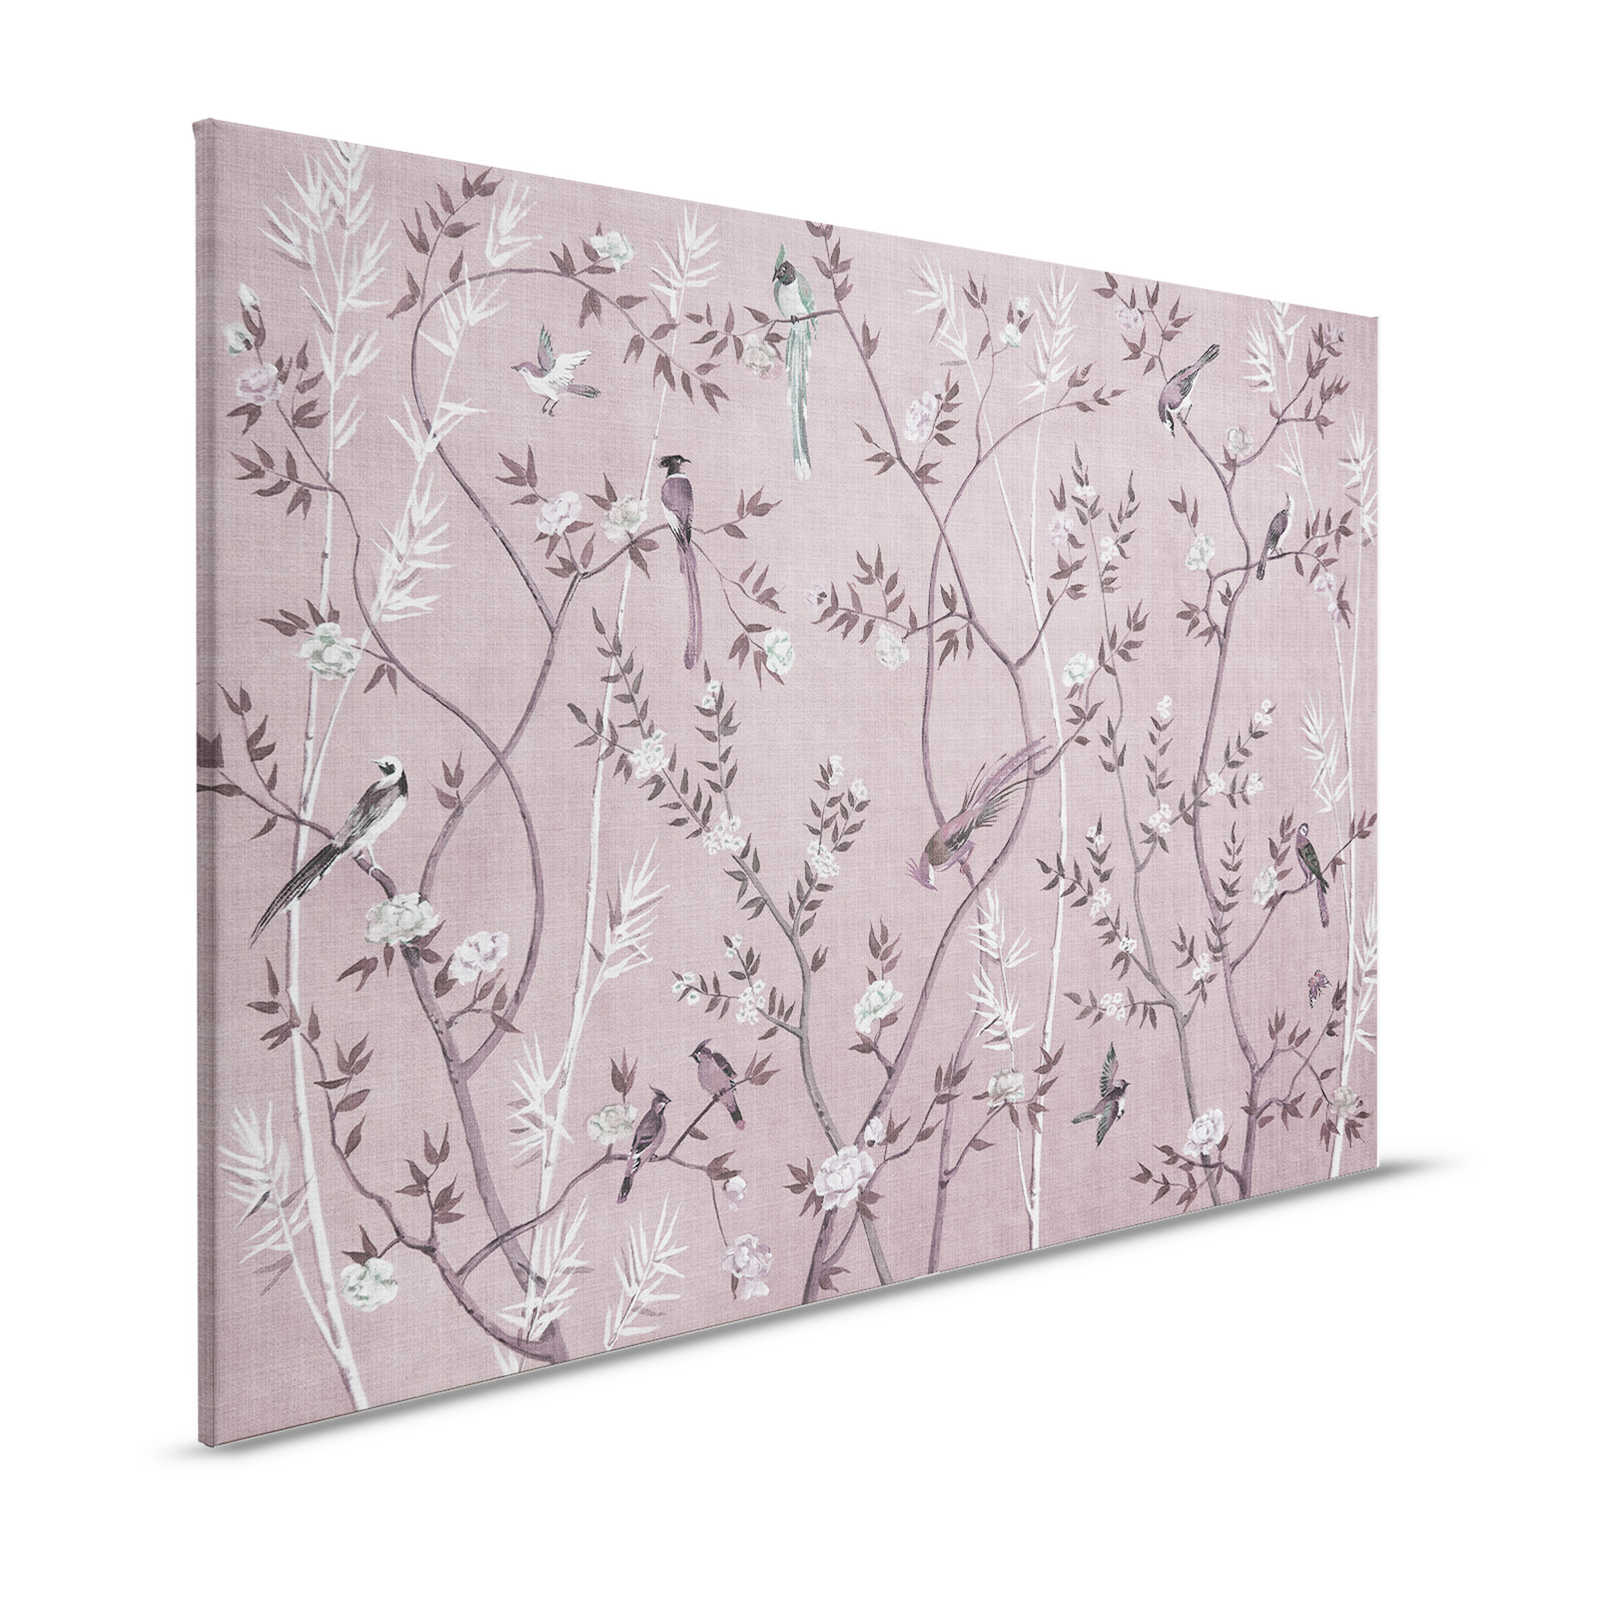 Tea Room 3 - Leinwandbild Vögel & Blüten Design in Rosa & Weiß – 1,20 m x 0,80 m
